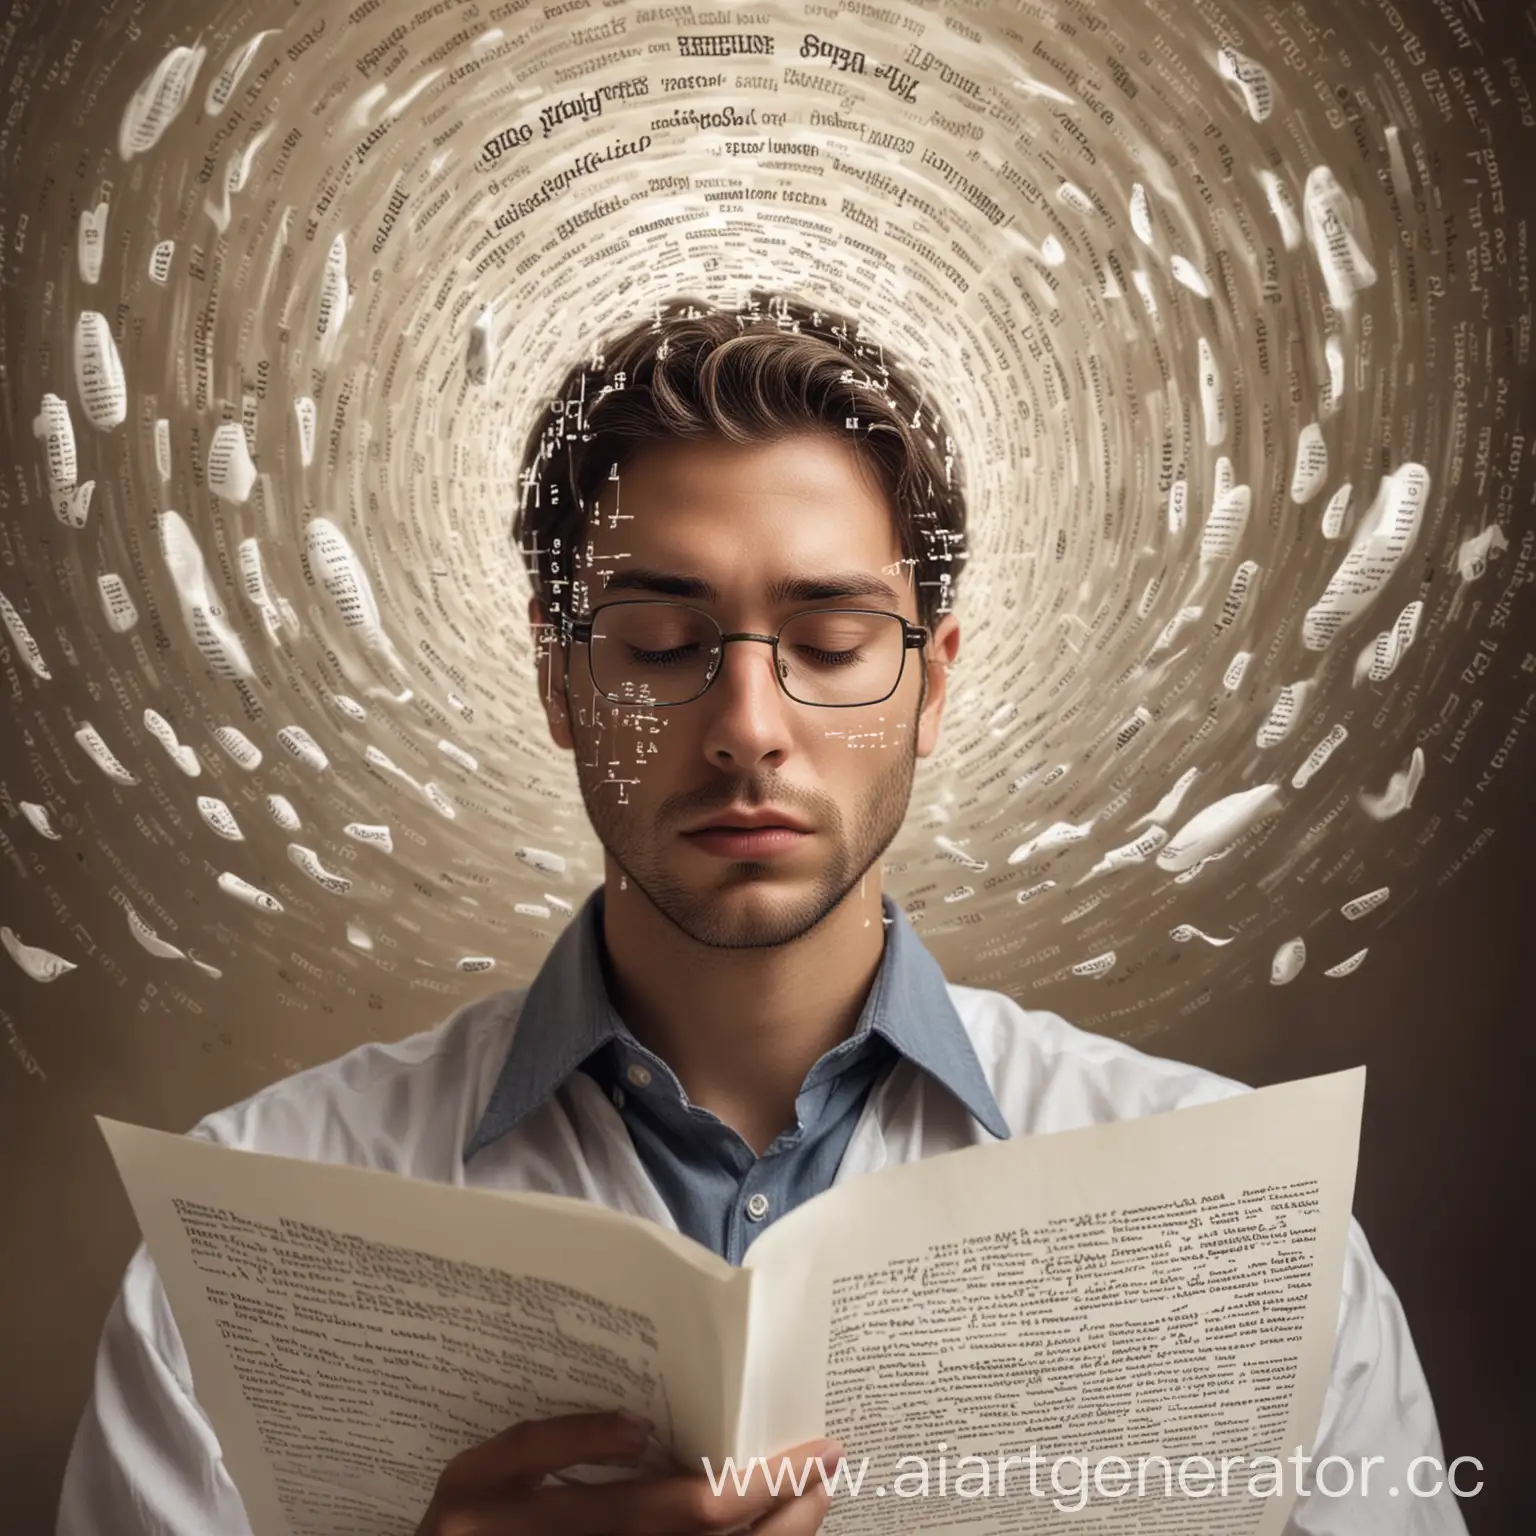 Изображение человека, который внимательно изучает документ, в то время как из документа выходят символы и слова, образуя вокруг головы невидимый кокон или вихрь